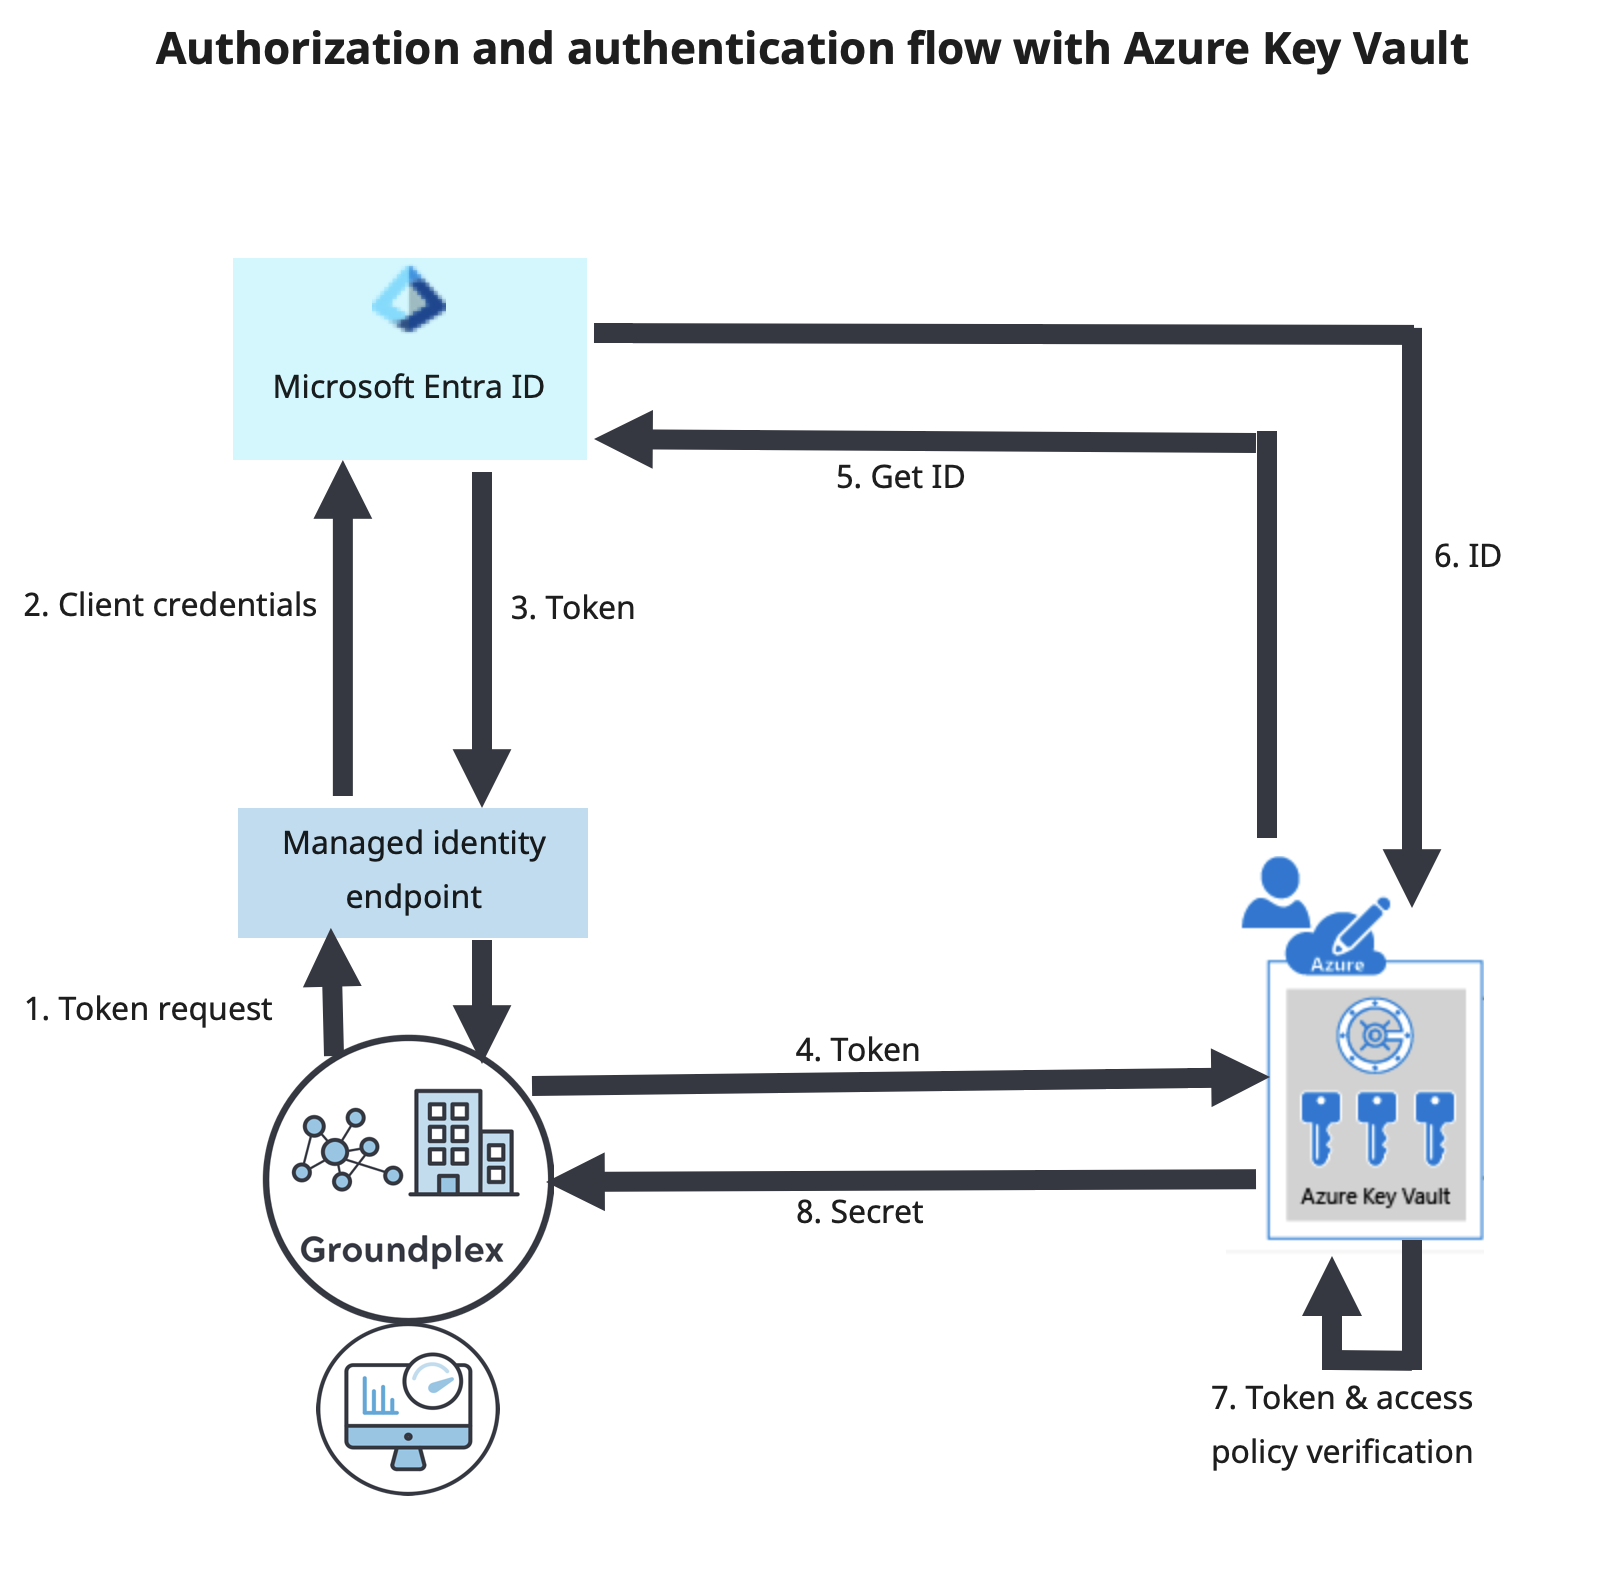 Secrets Management Azure Key Vault flow